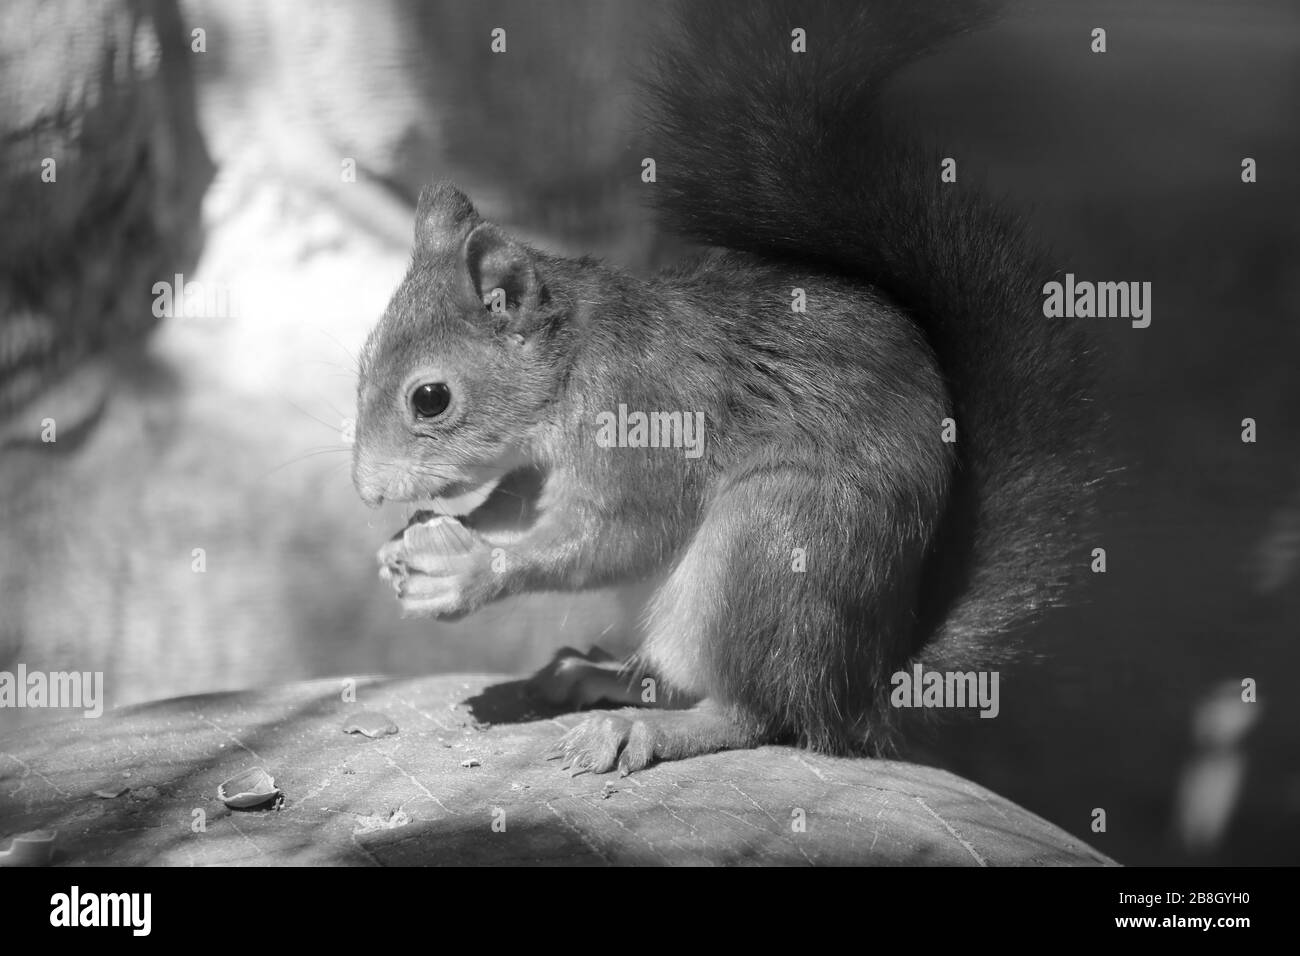 Ein Eichhörnchen sitzt auf einem Stein und isst eine Nuss. Schwarzweißfoto Stockfoto